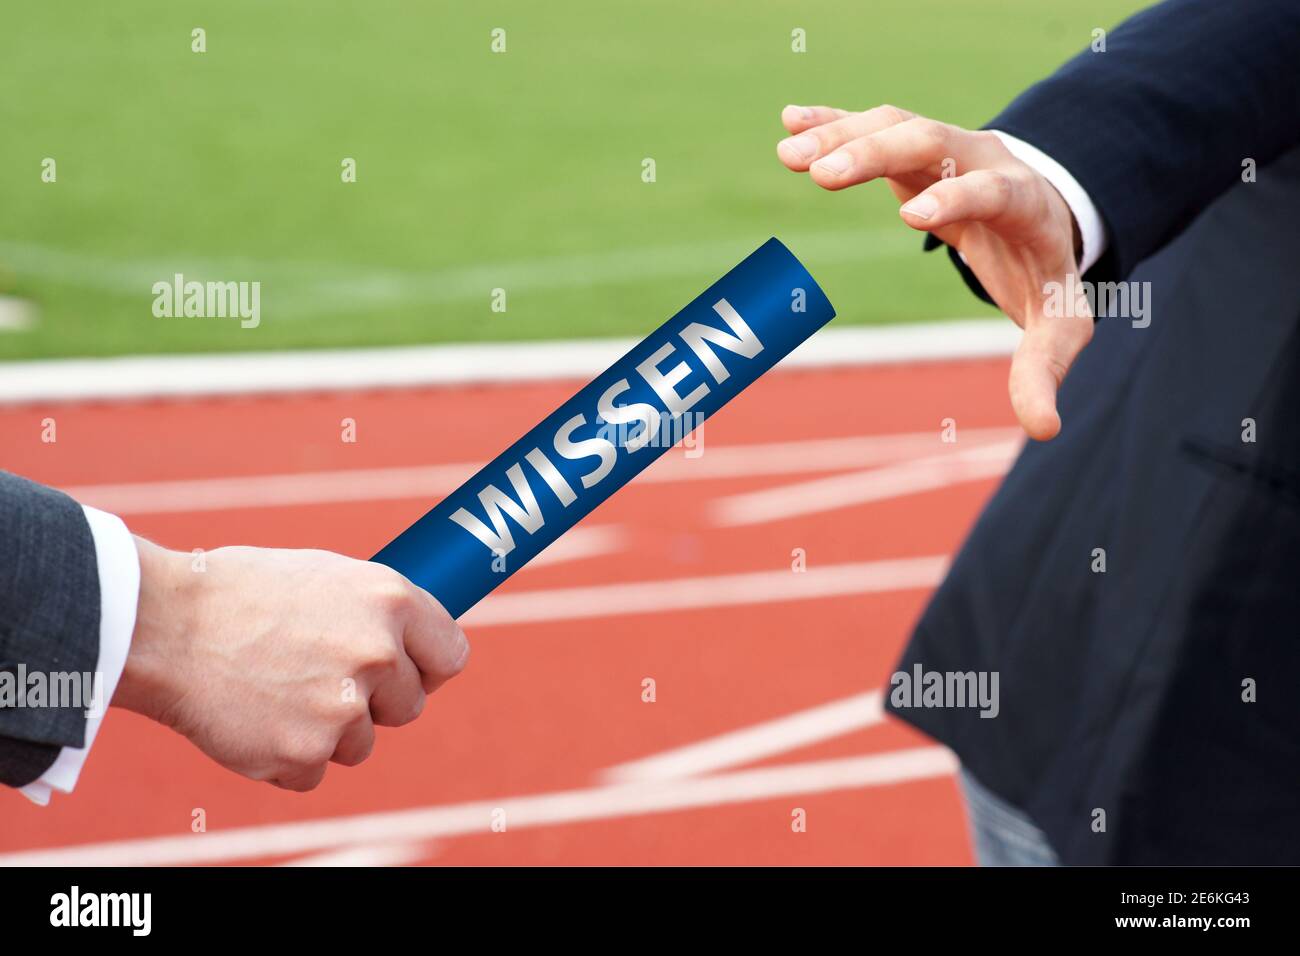 Uomini d'affari che passano il testimone in gara di relè con la parola tedesca Wissen Significa conoscenza Foto Stock